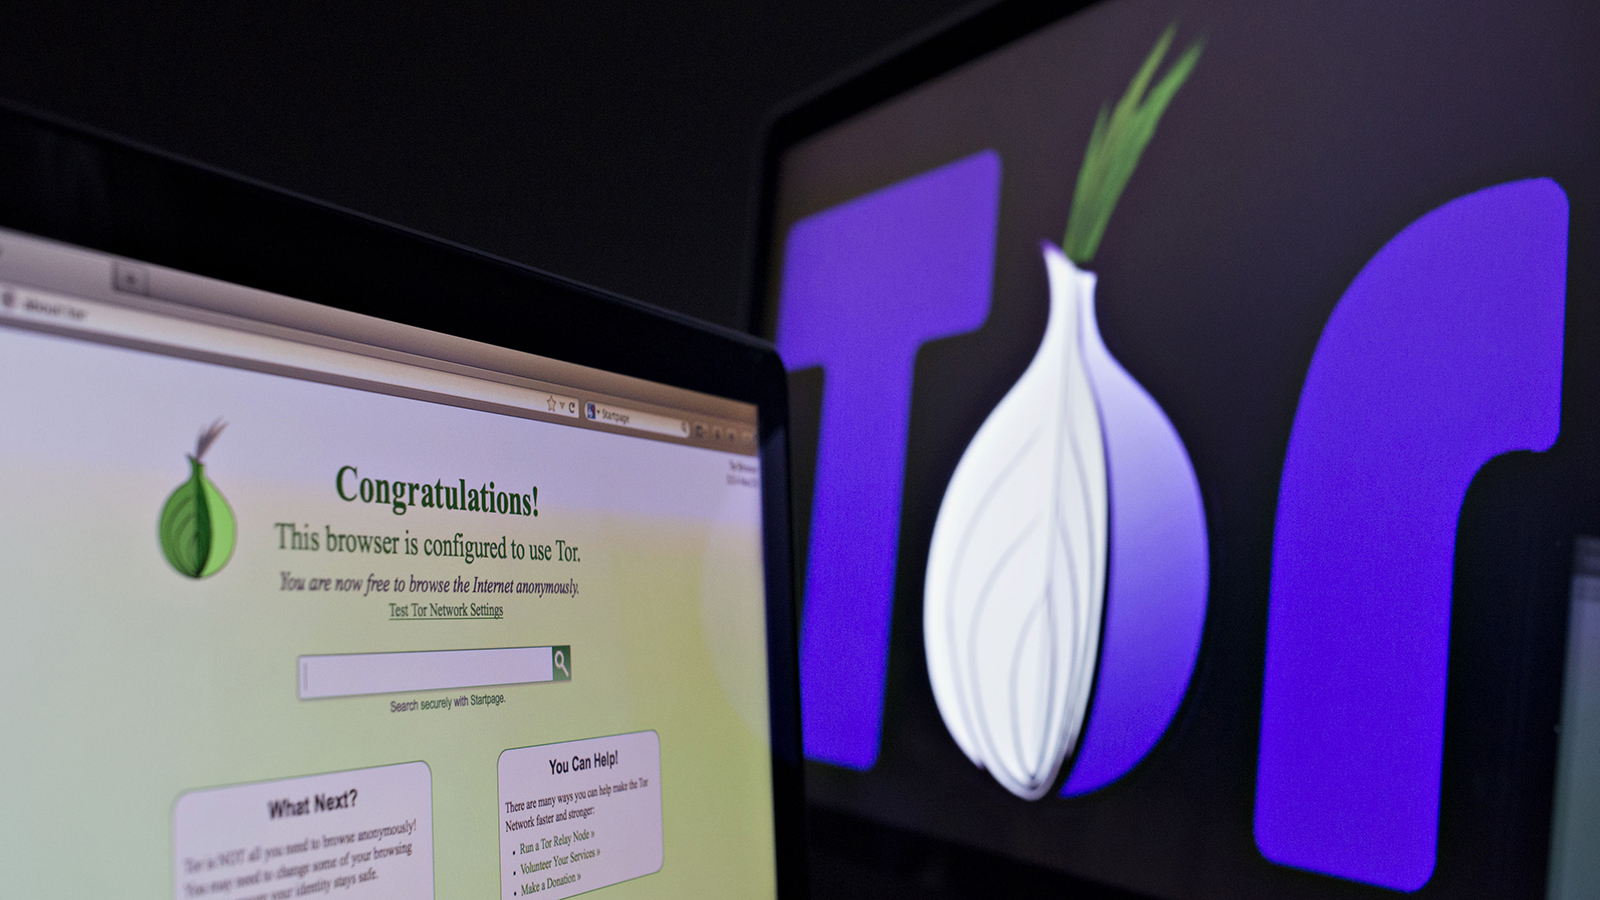 Tor browser beeline hyrda закладка из кожи купить